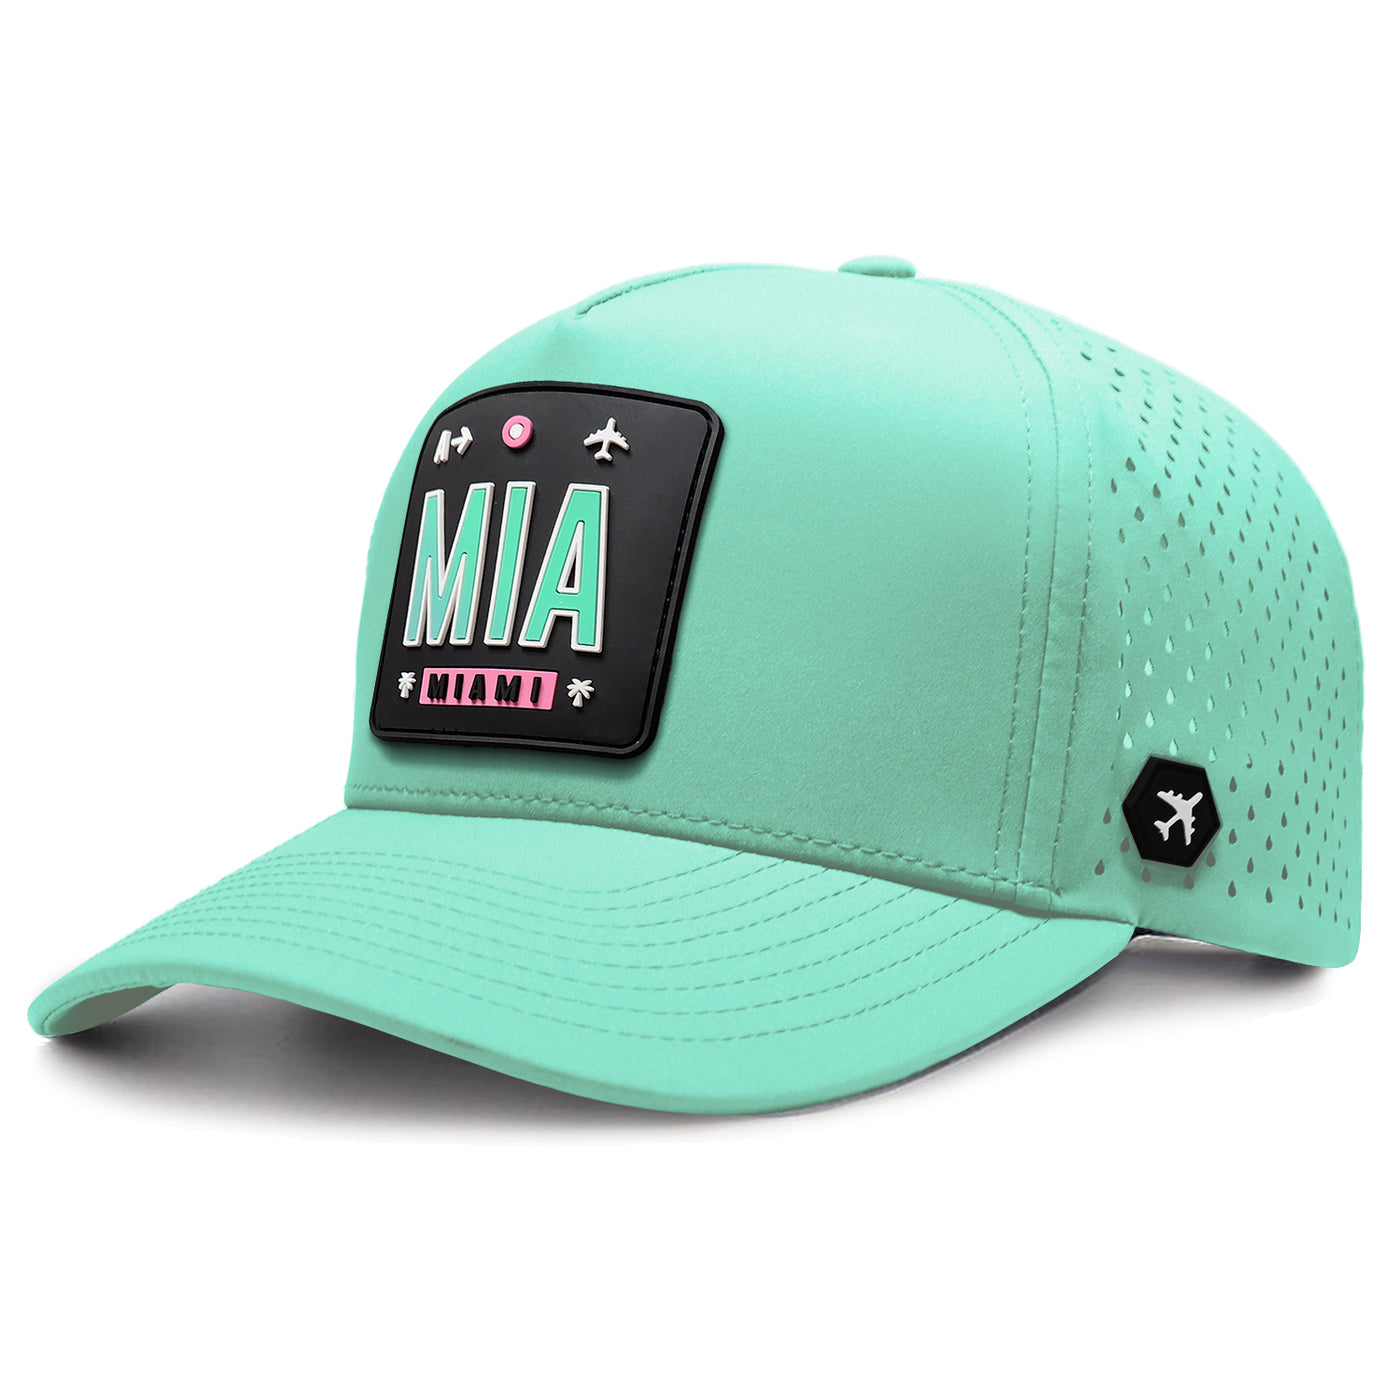 MIA - Miami Hat - Black